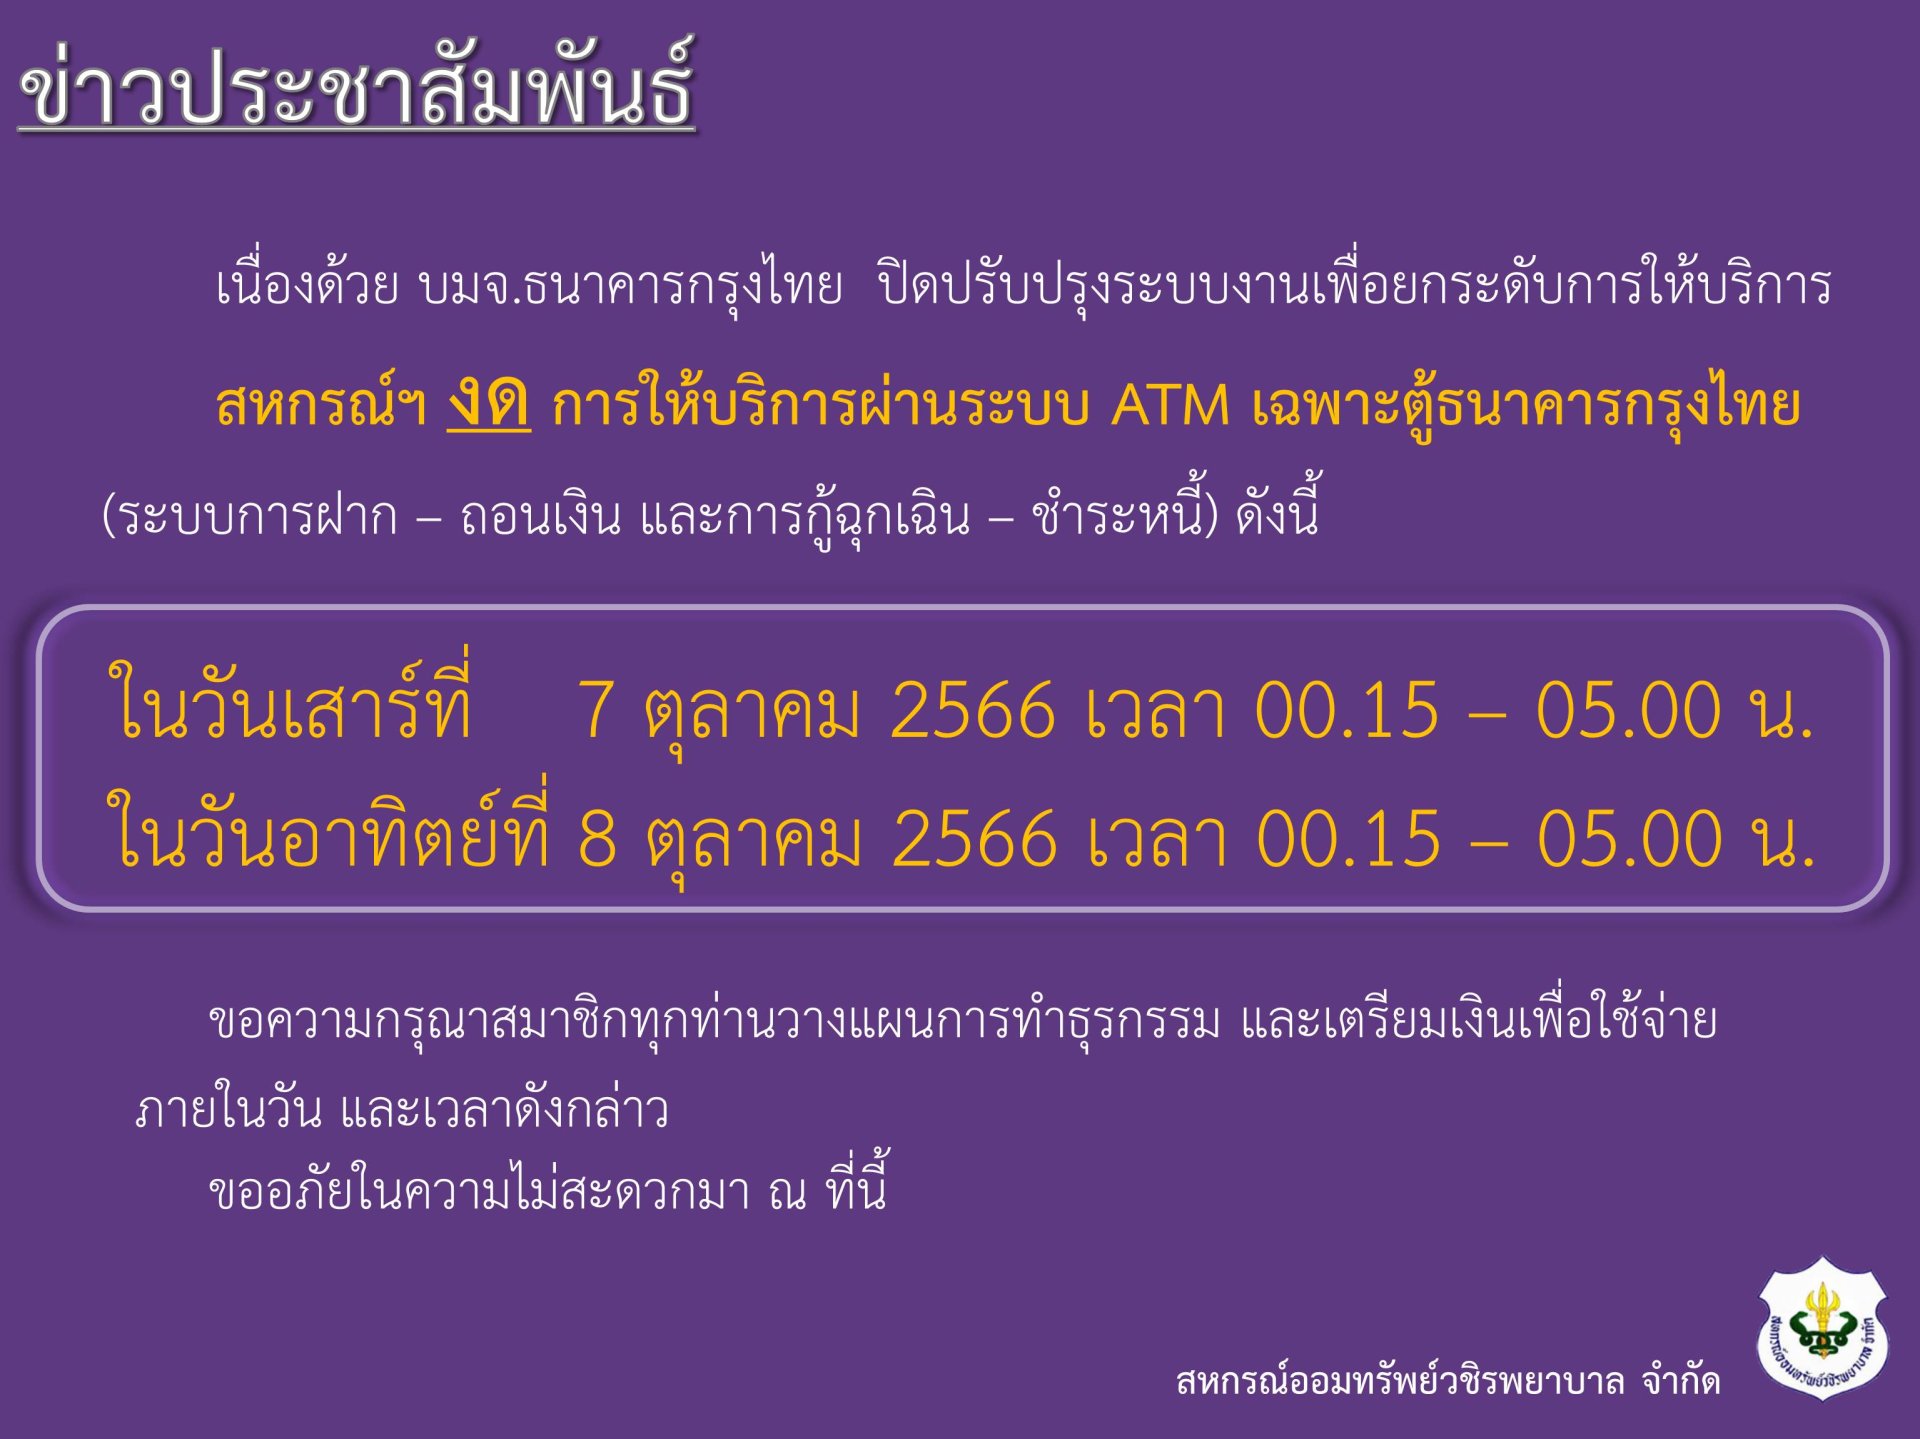 แจ้งงดให้บริการผ่านระบบ ATM เฉพาะตู้ธนาคารกรุงไทย